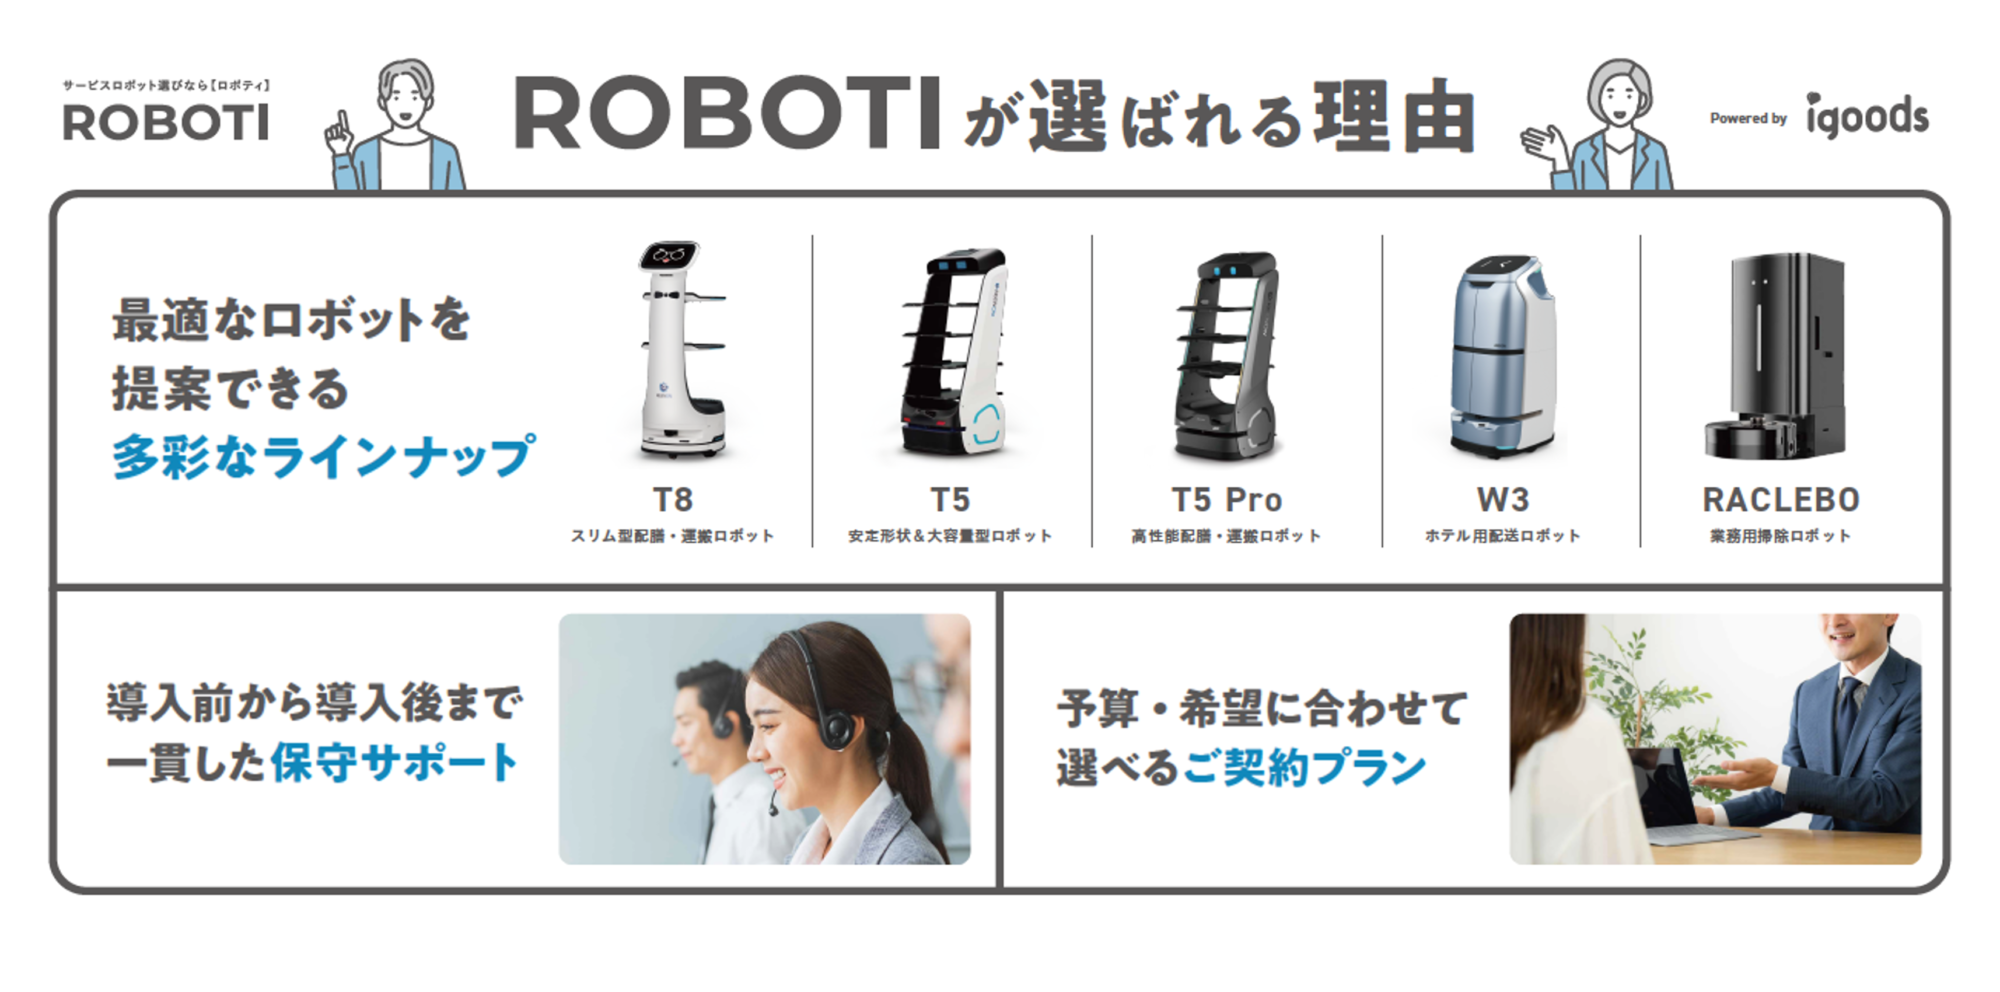 業務用ロボット販売サービスROBOTI（ロボティ）が選ばれる理由